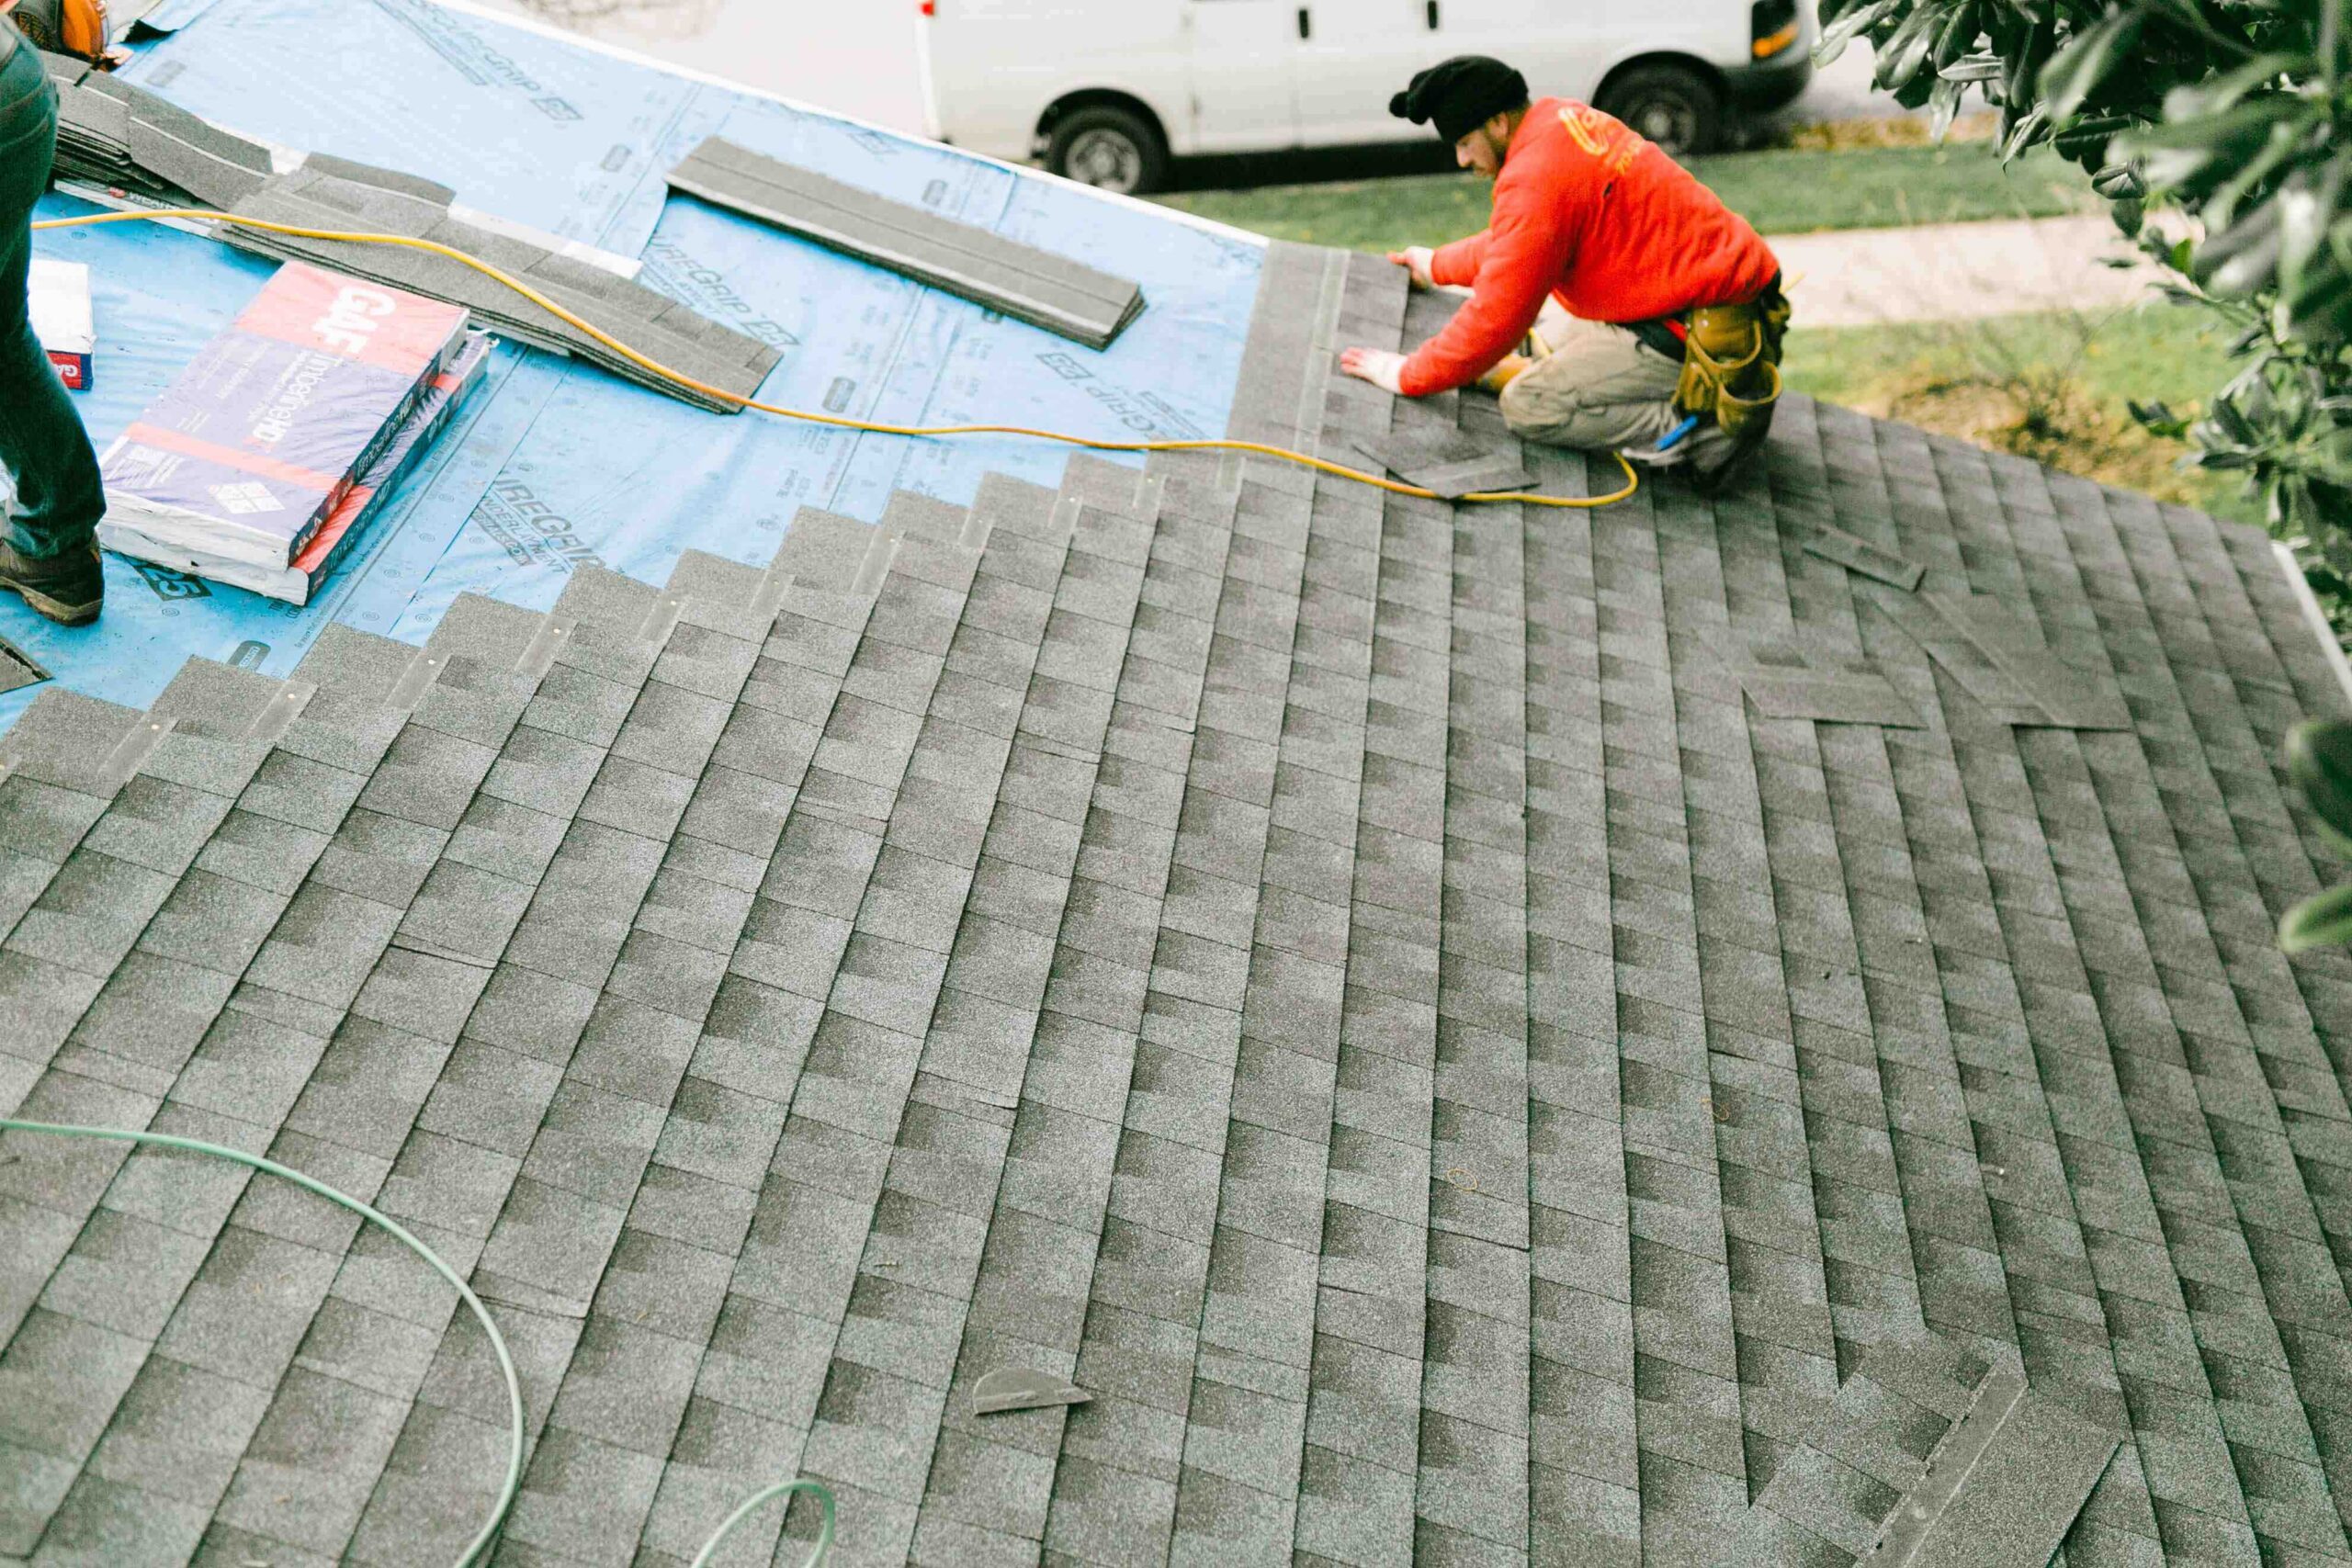 Repairing or Replacing Your Roof